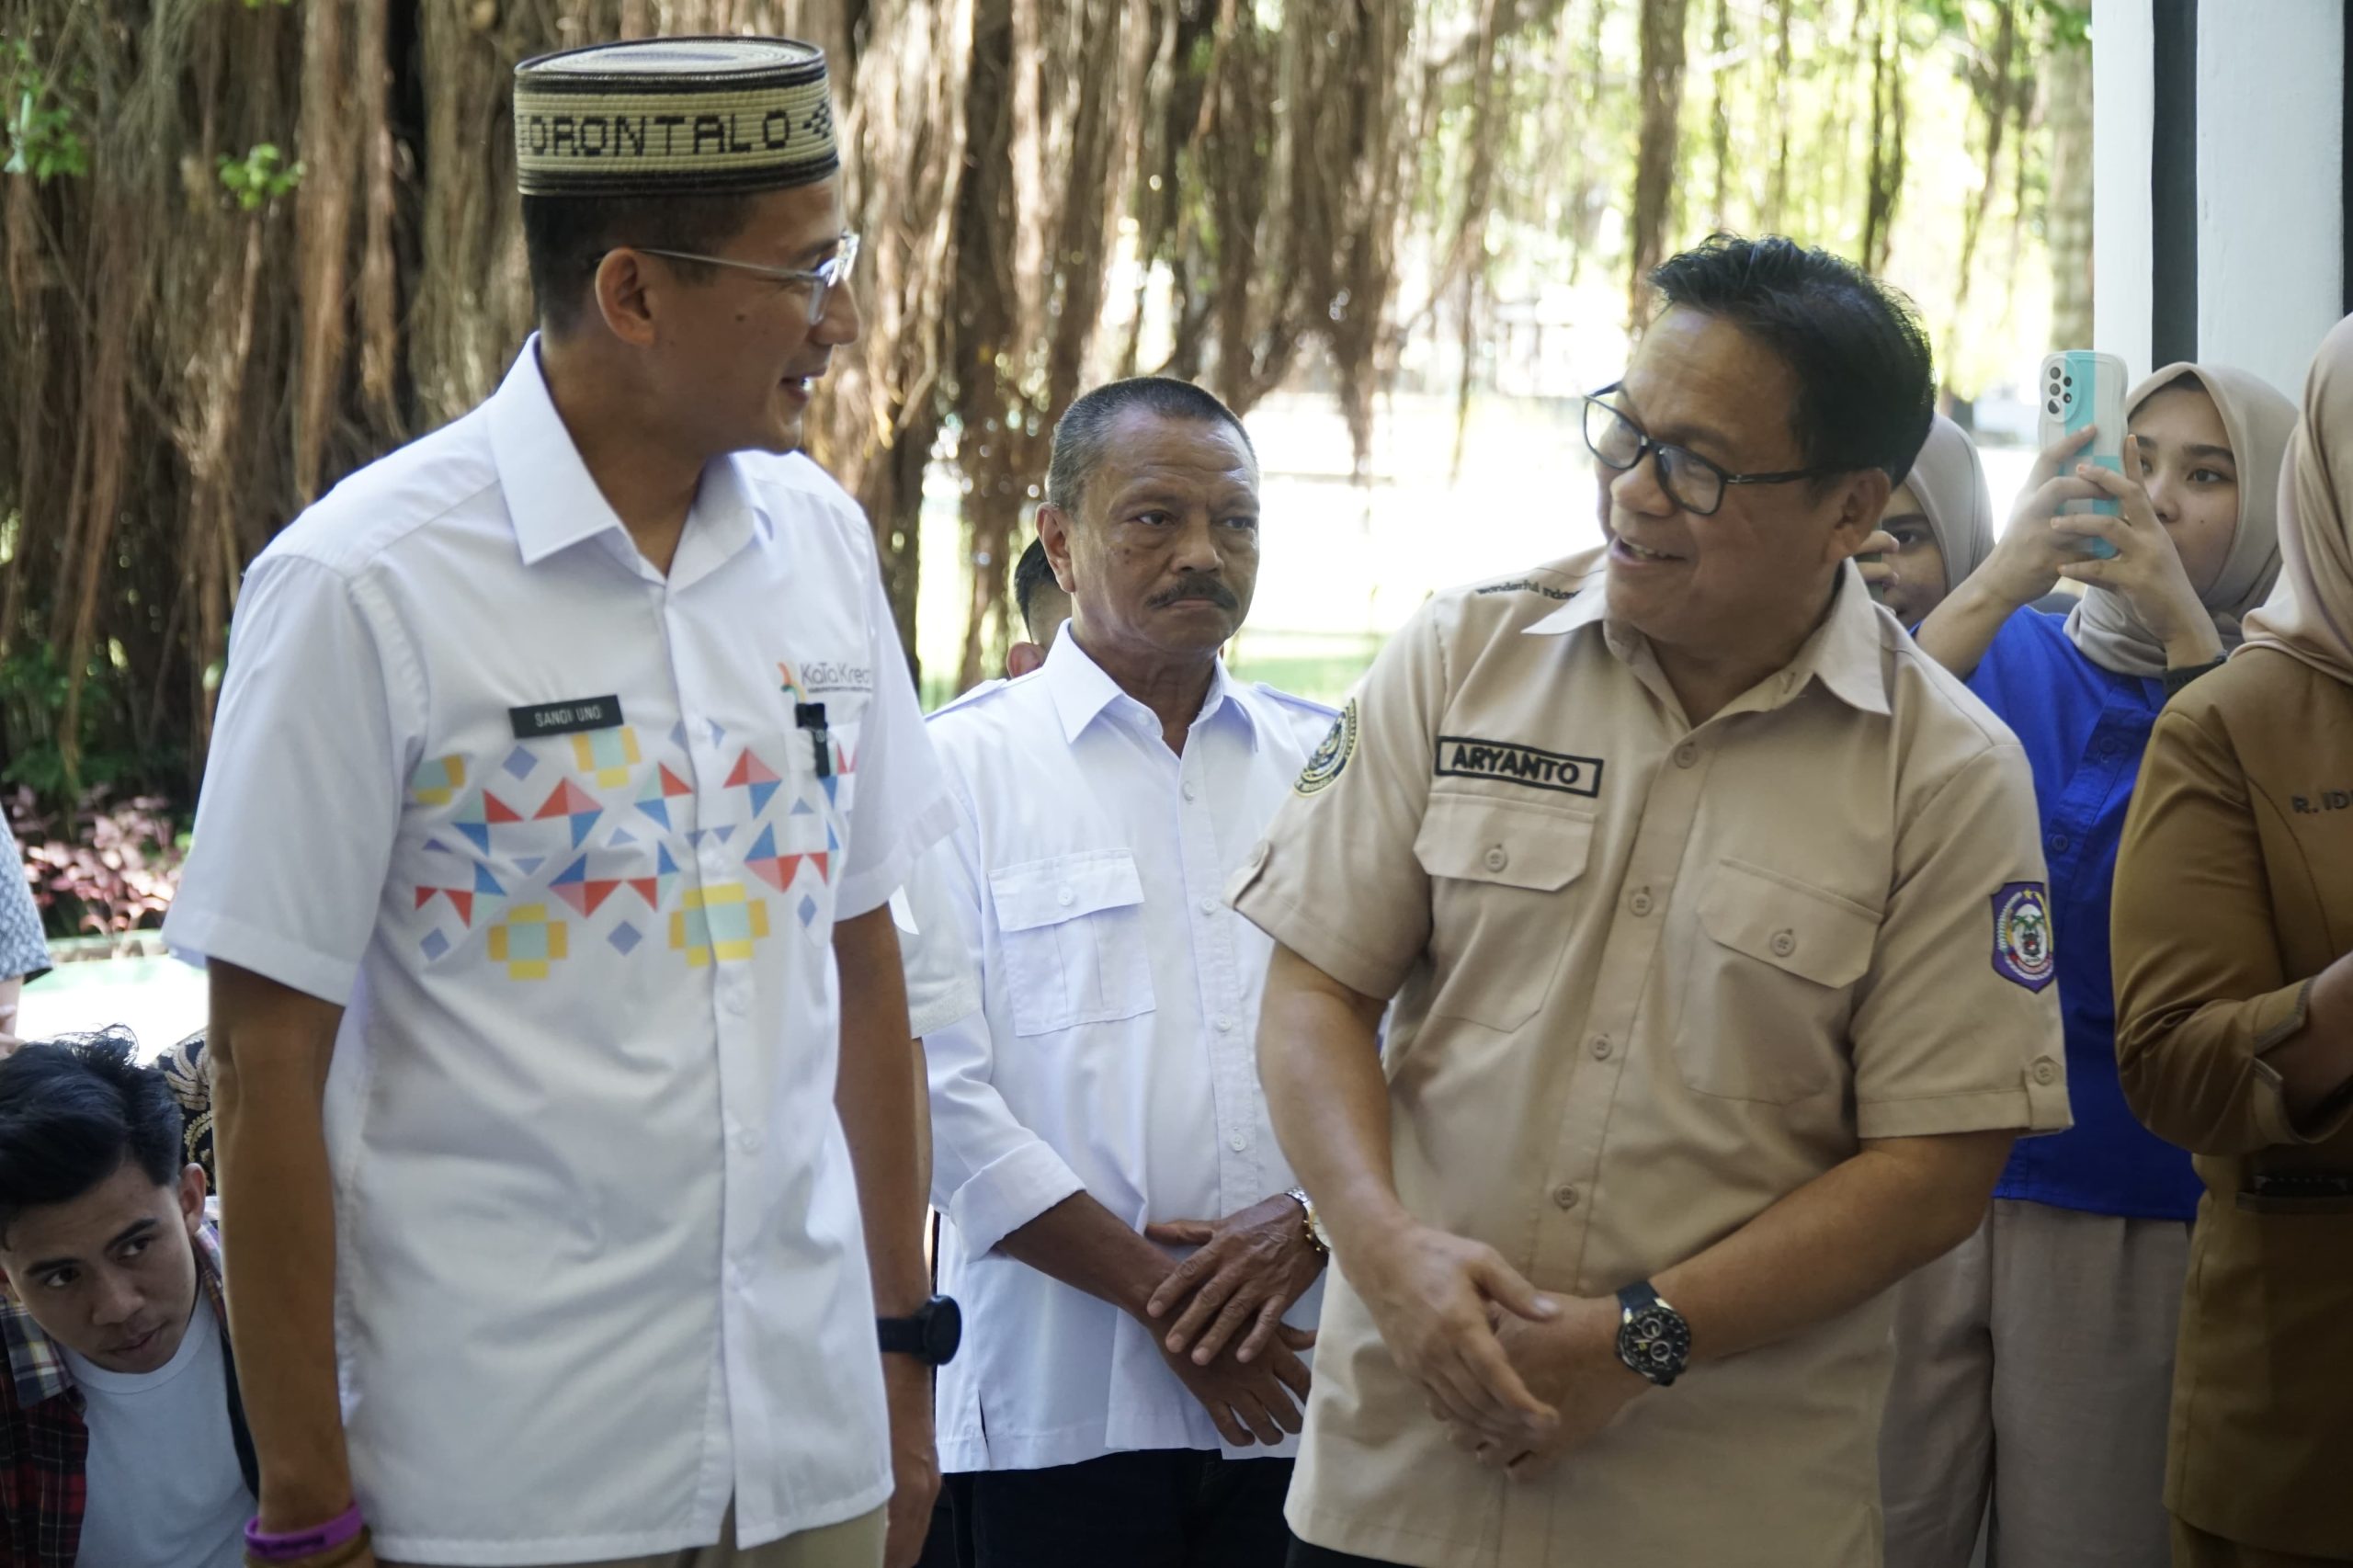 Aryanto Husain Sambut Kunjungan Sandiaga Uno di Gorontalo